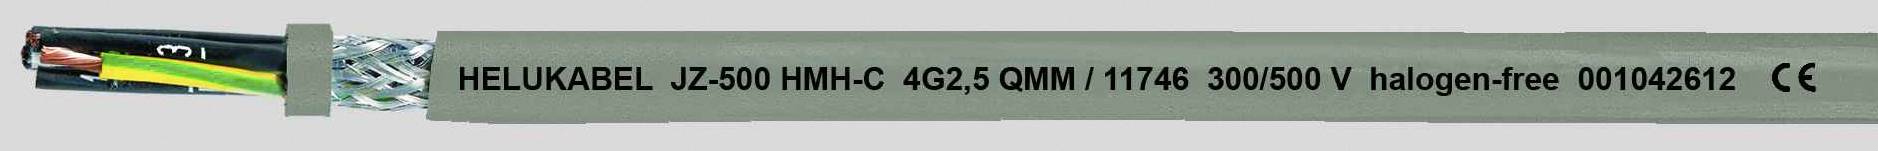 HELUKABEL JZ-500 HMH-C Steuerleitung 7 G 0.75 mm² Grau 11682-500 500 m